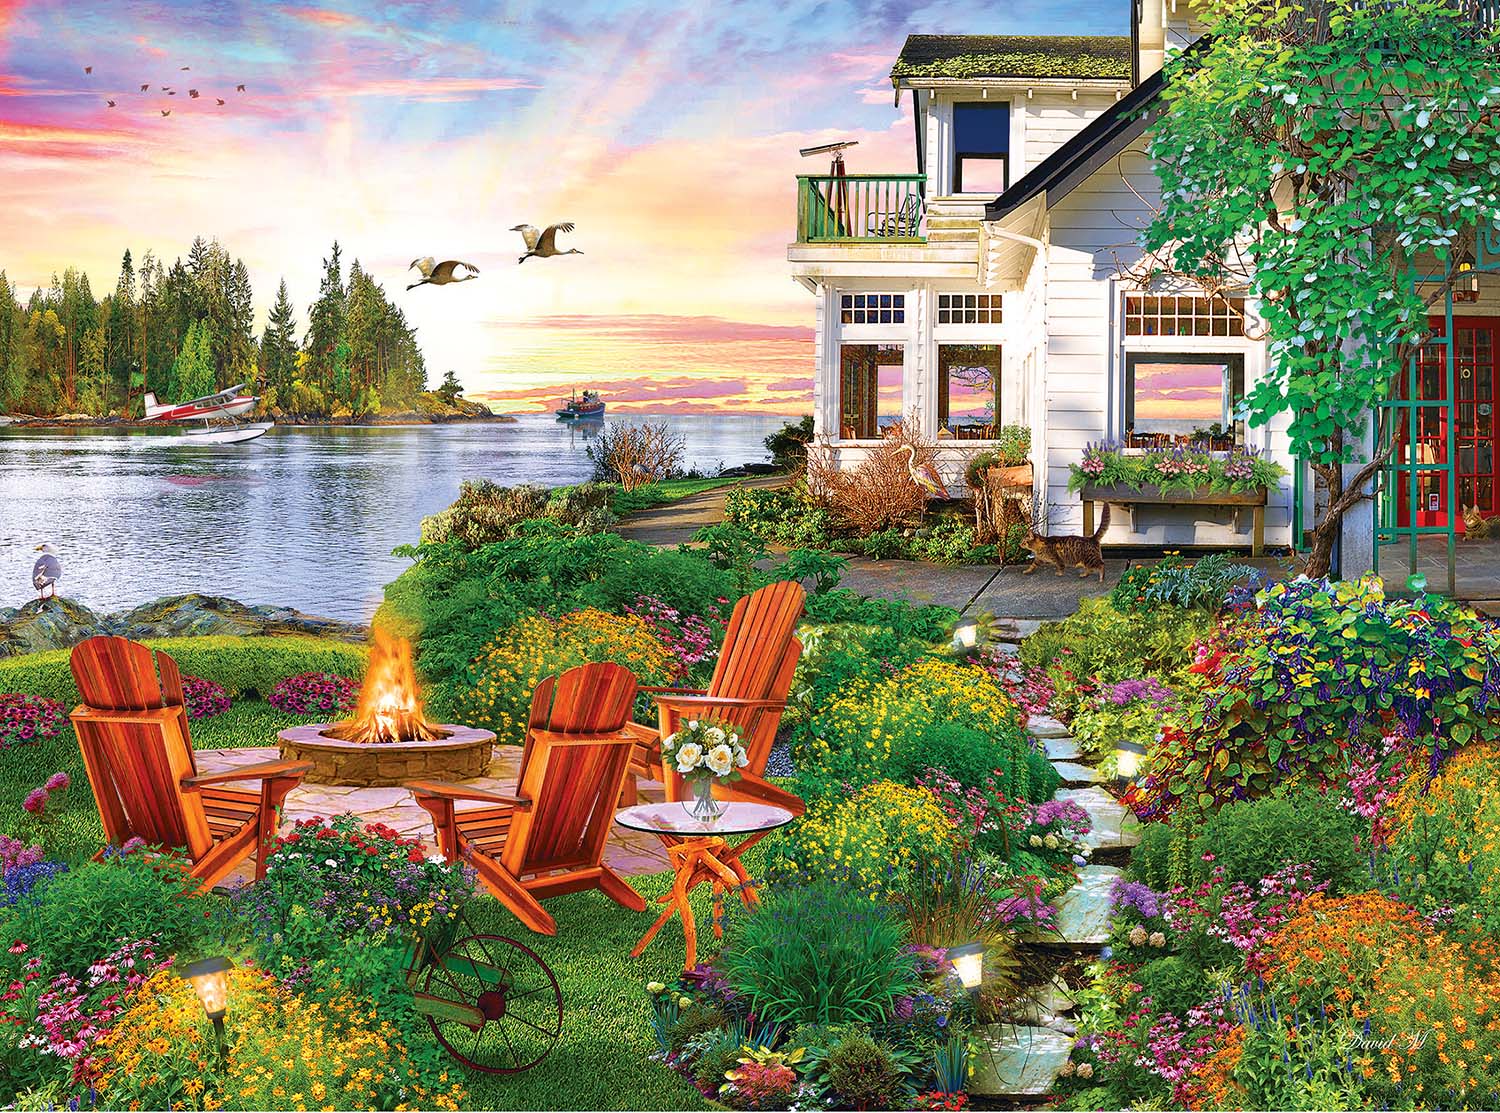 My Happy Place - Harbour House Landscape Jigsaw Puzzle